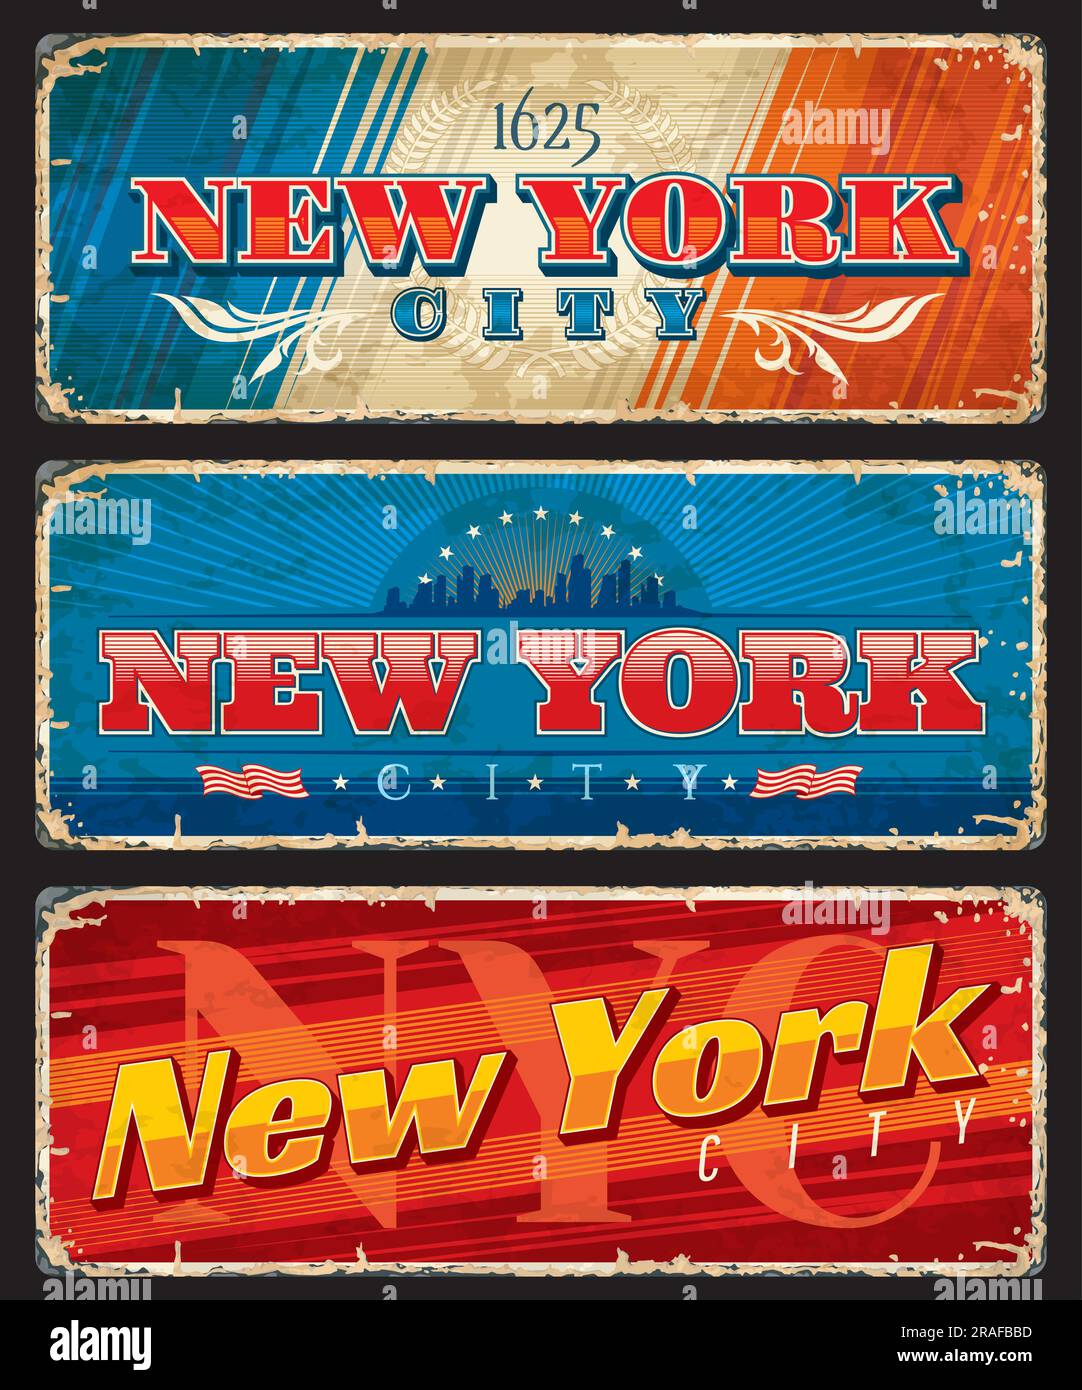 Targhe e adesivi da viaggio di New York City, striscioni in latta grunge vettoriale dei punti di riferimento degli Stati Uniti. Skyline con gli edifici del paesaggio urbano di Manhattan, le onde blu, la bandiera di New York, le stelle e le strisce striscioni cartoline d'epoca Illustrazione Vettoriale